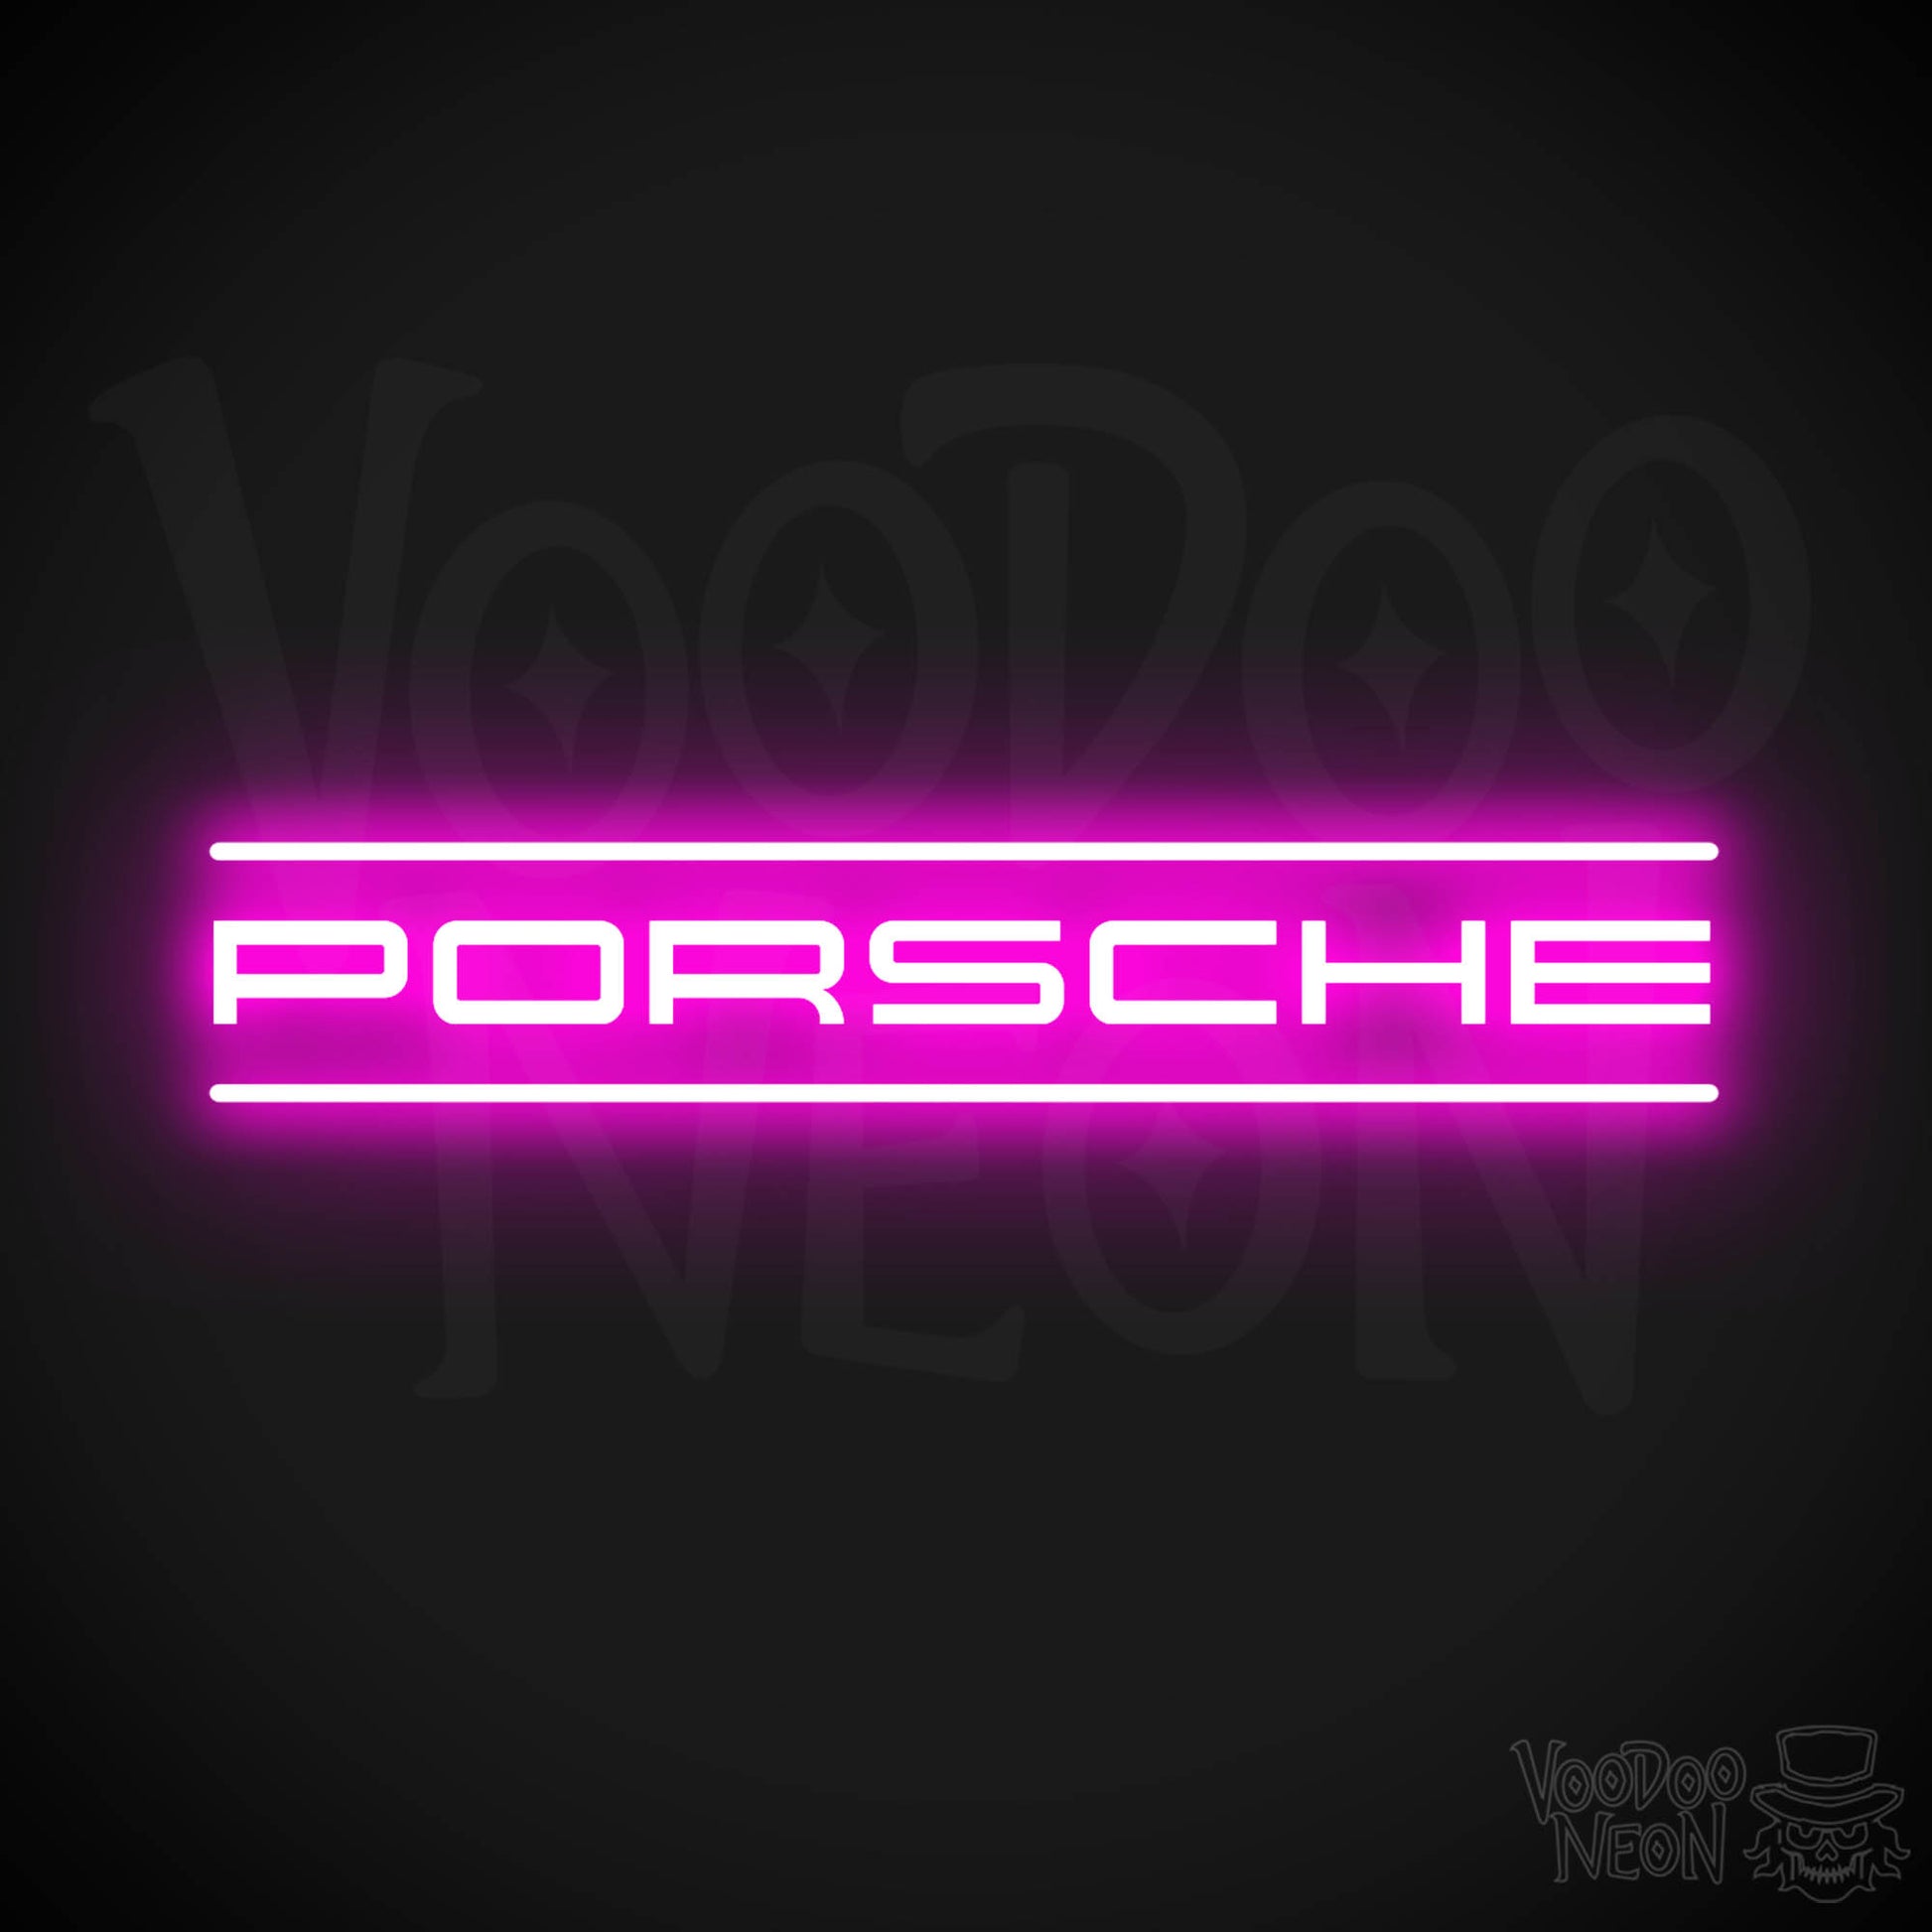 Porsche Neon Sign - Porsche Sign - Porsche Decor - Wall Art - Color Pink